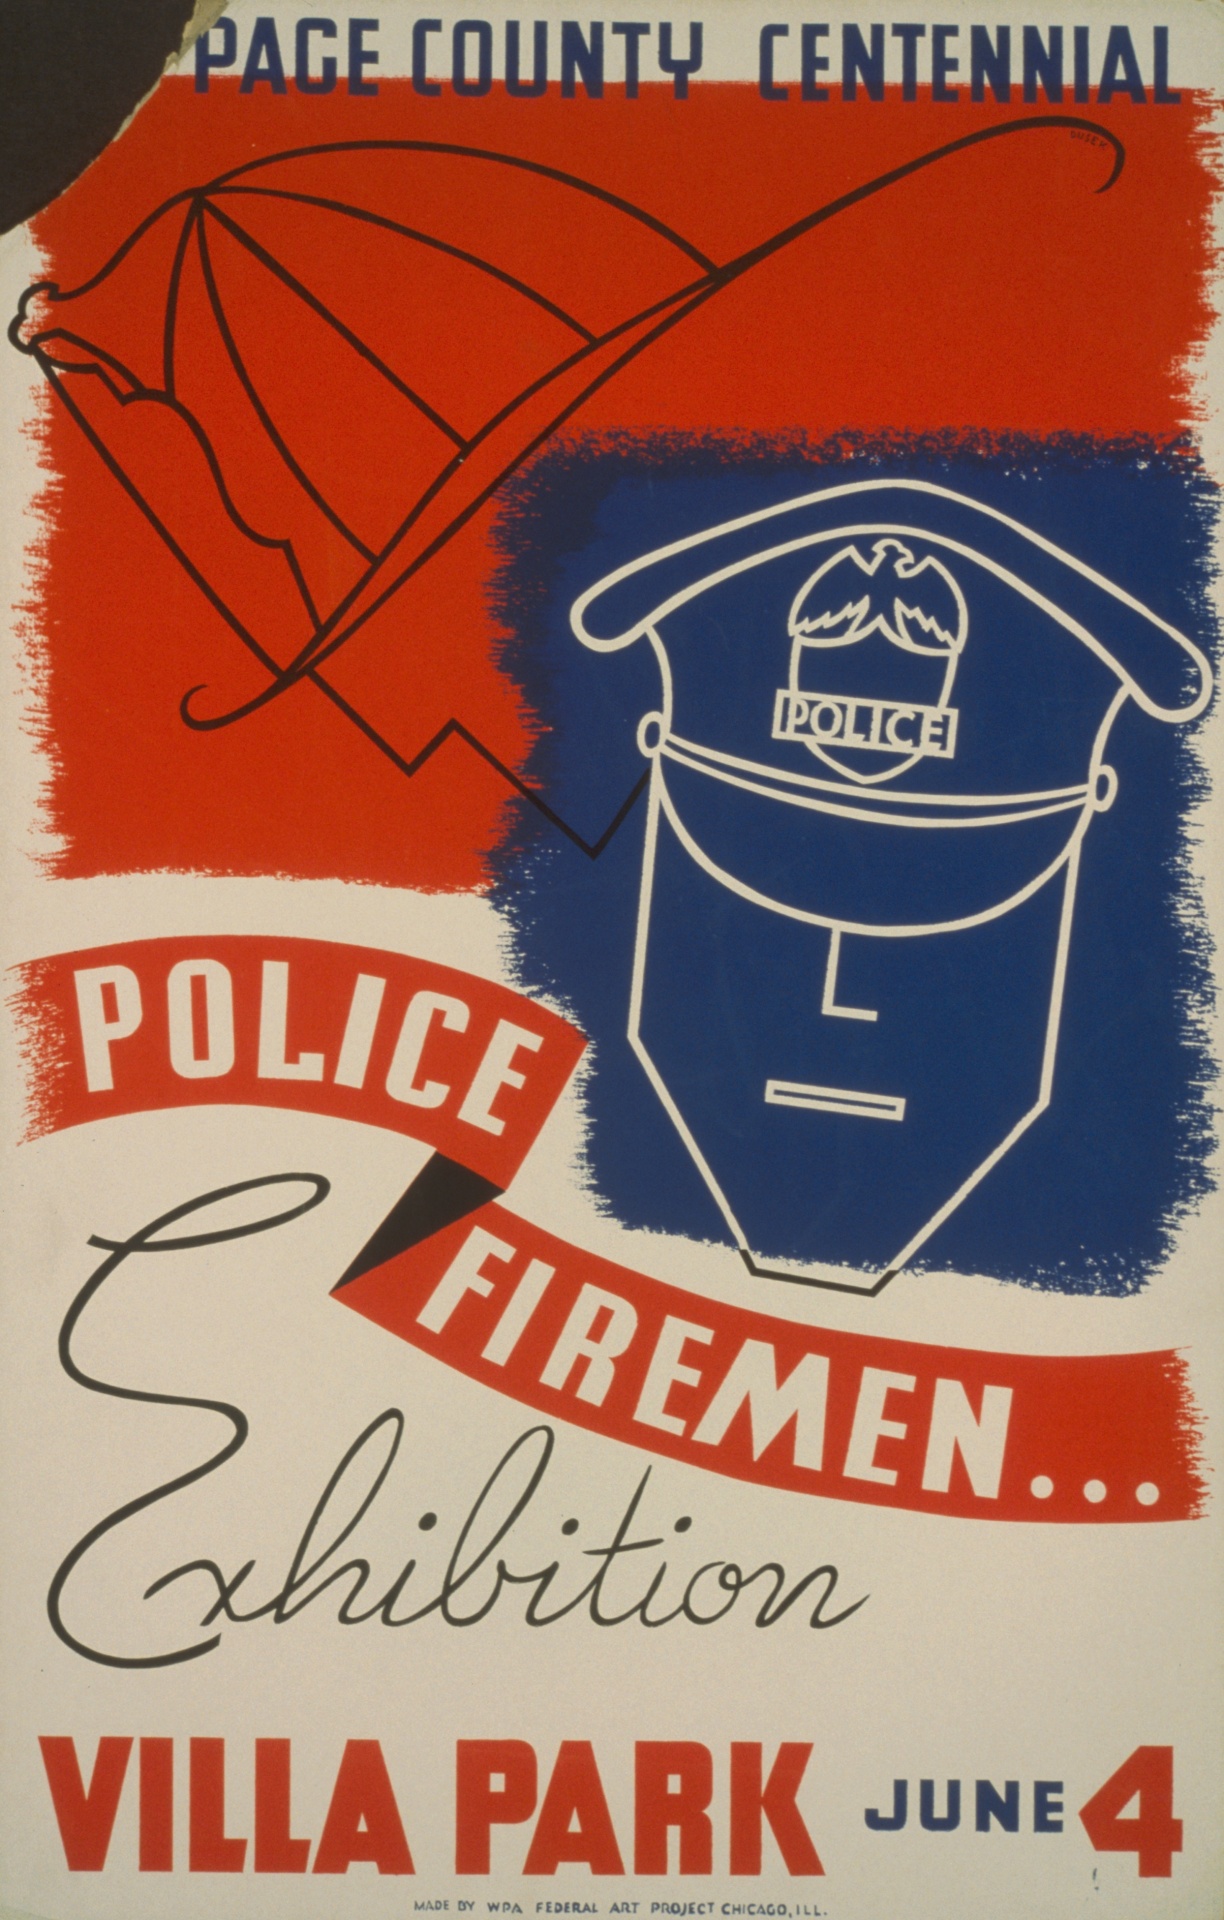 Cartel de Policía de la vendimia